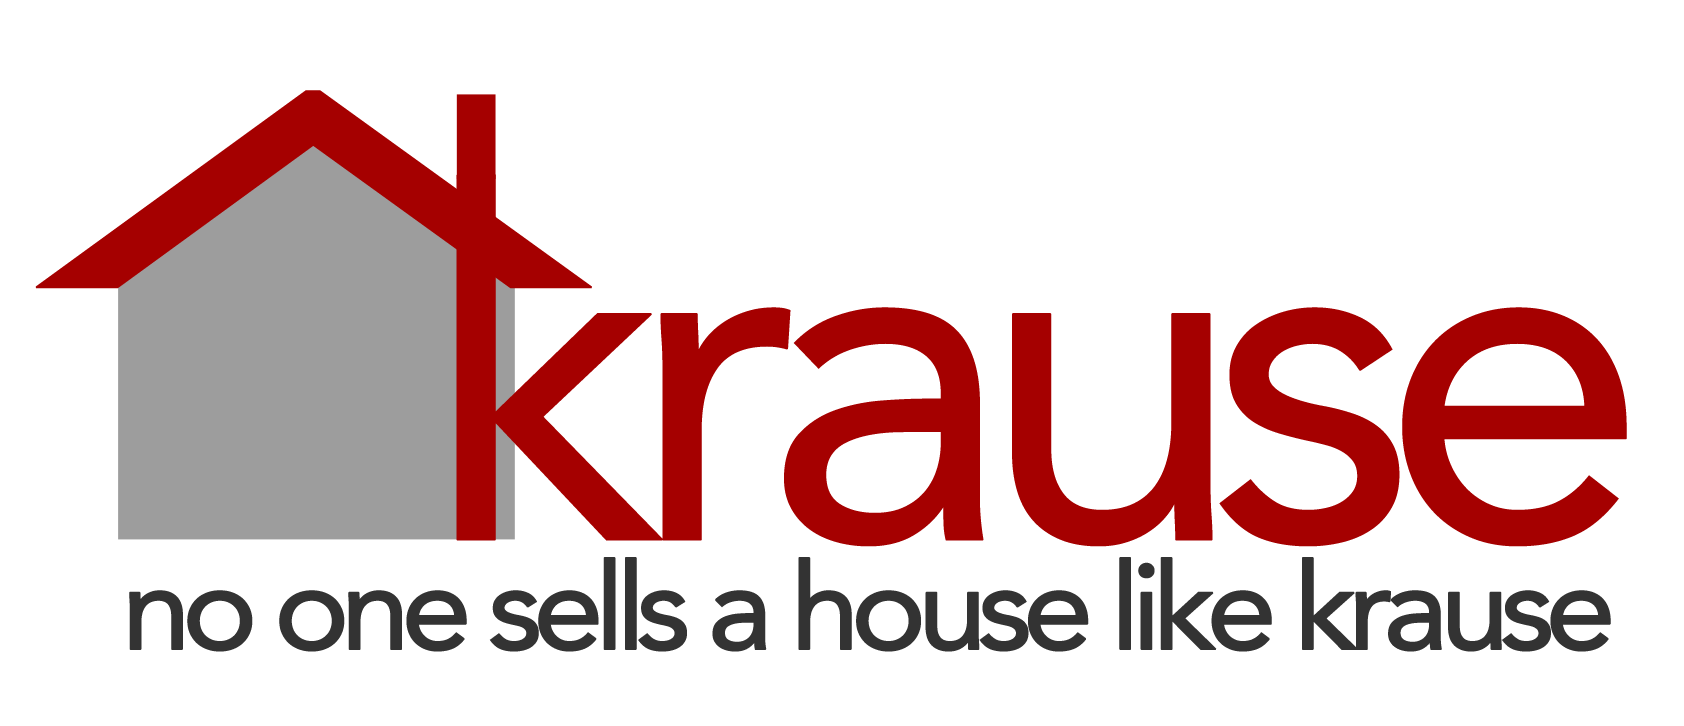 Krause House - no one sells a house like a krause